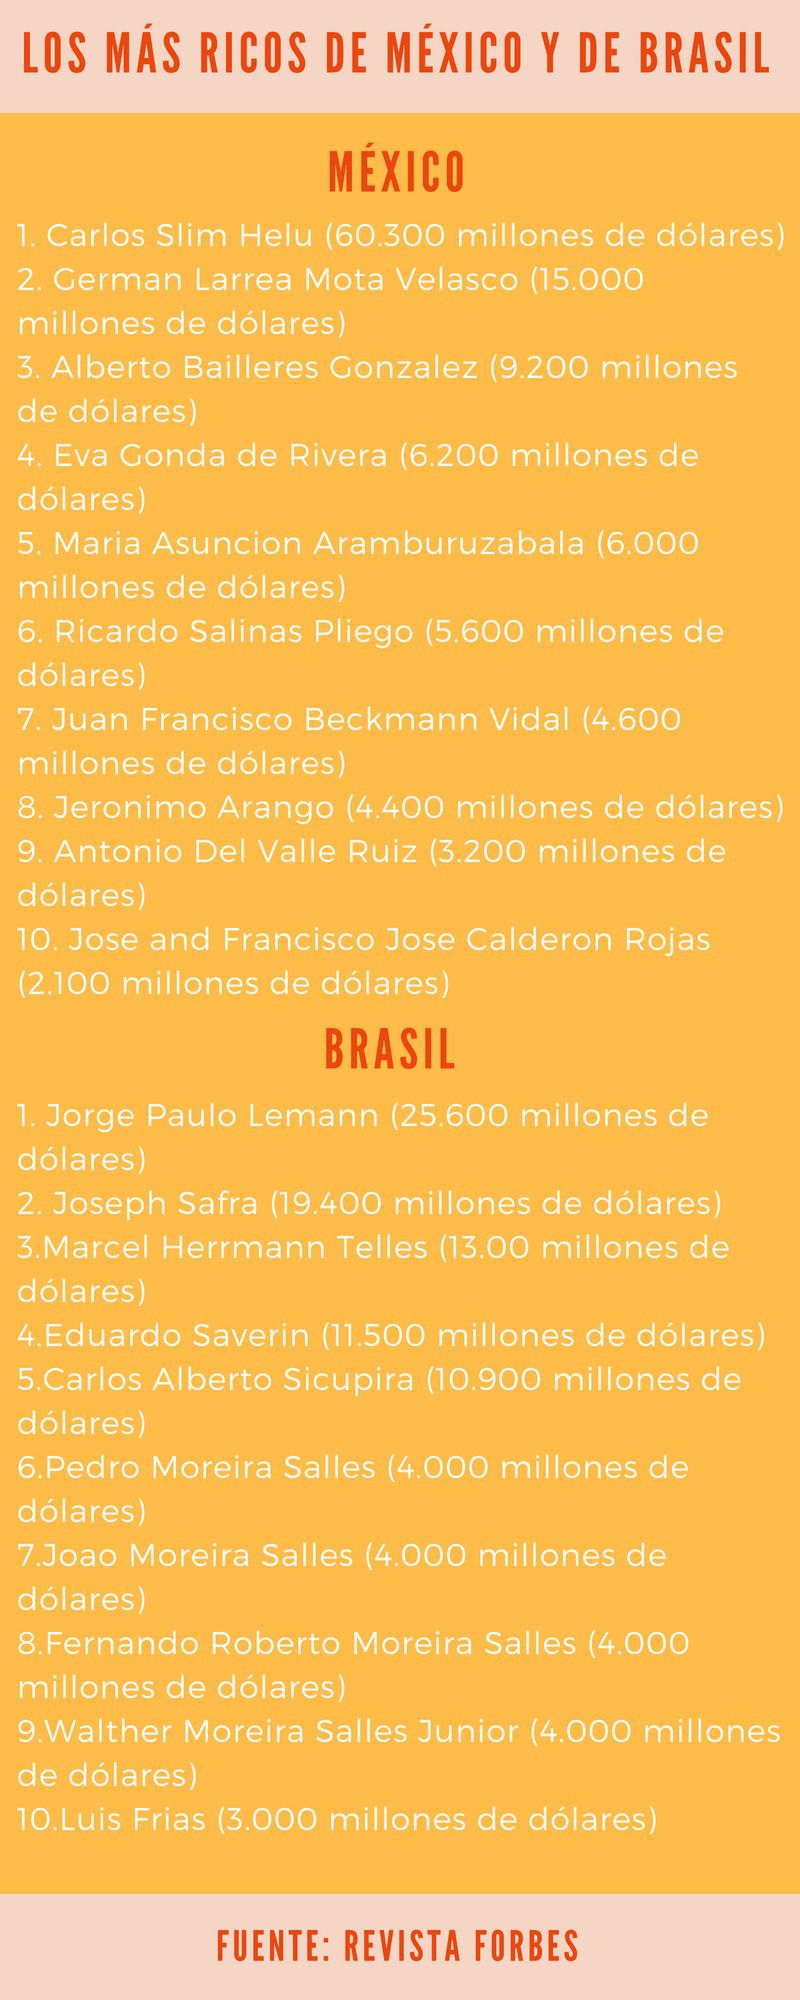  Estos son los más ricos de Brasil y México / Gráfico: ALN